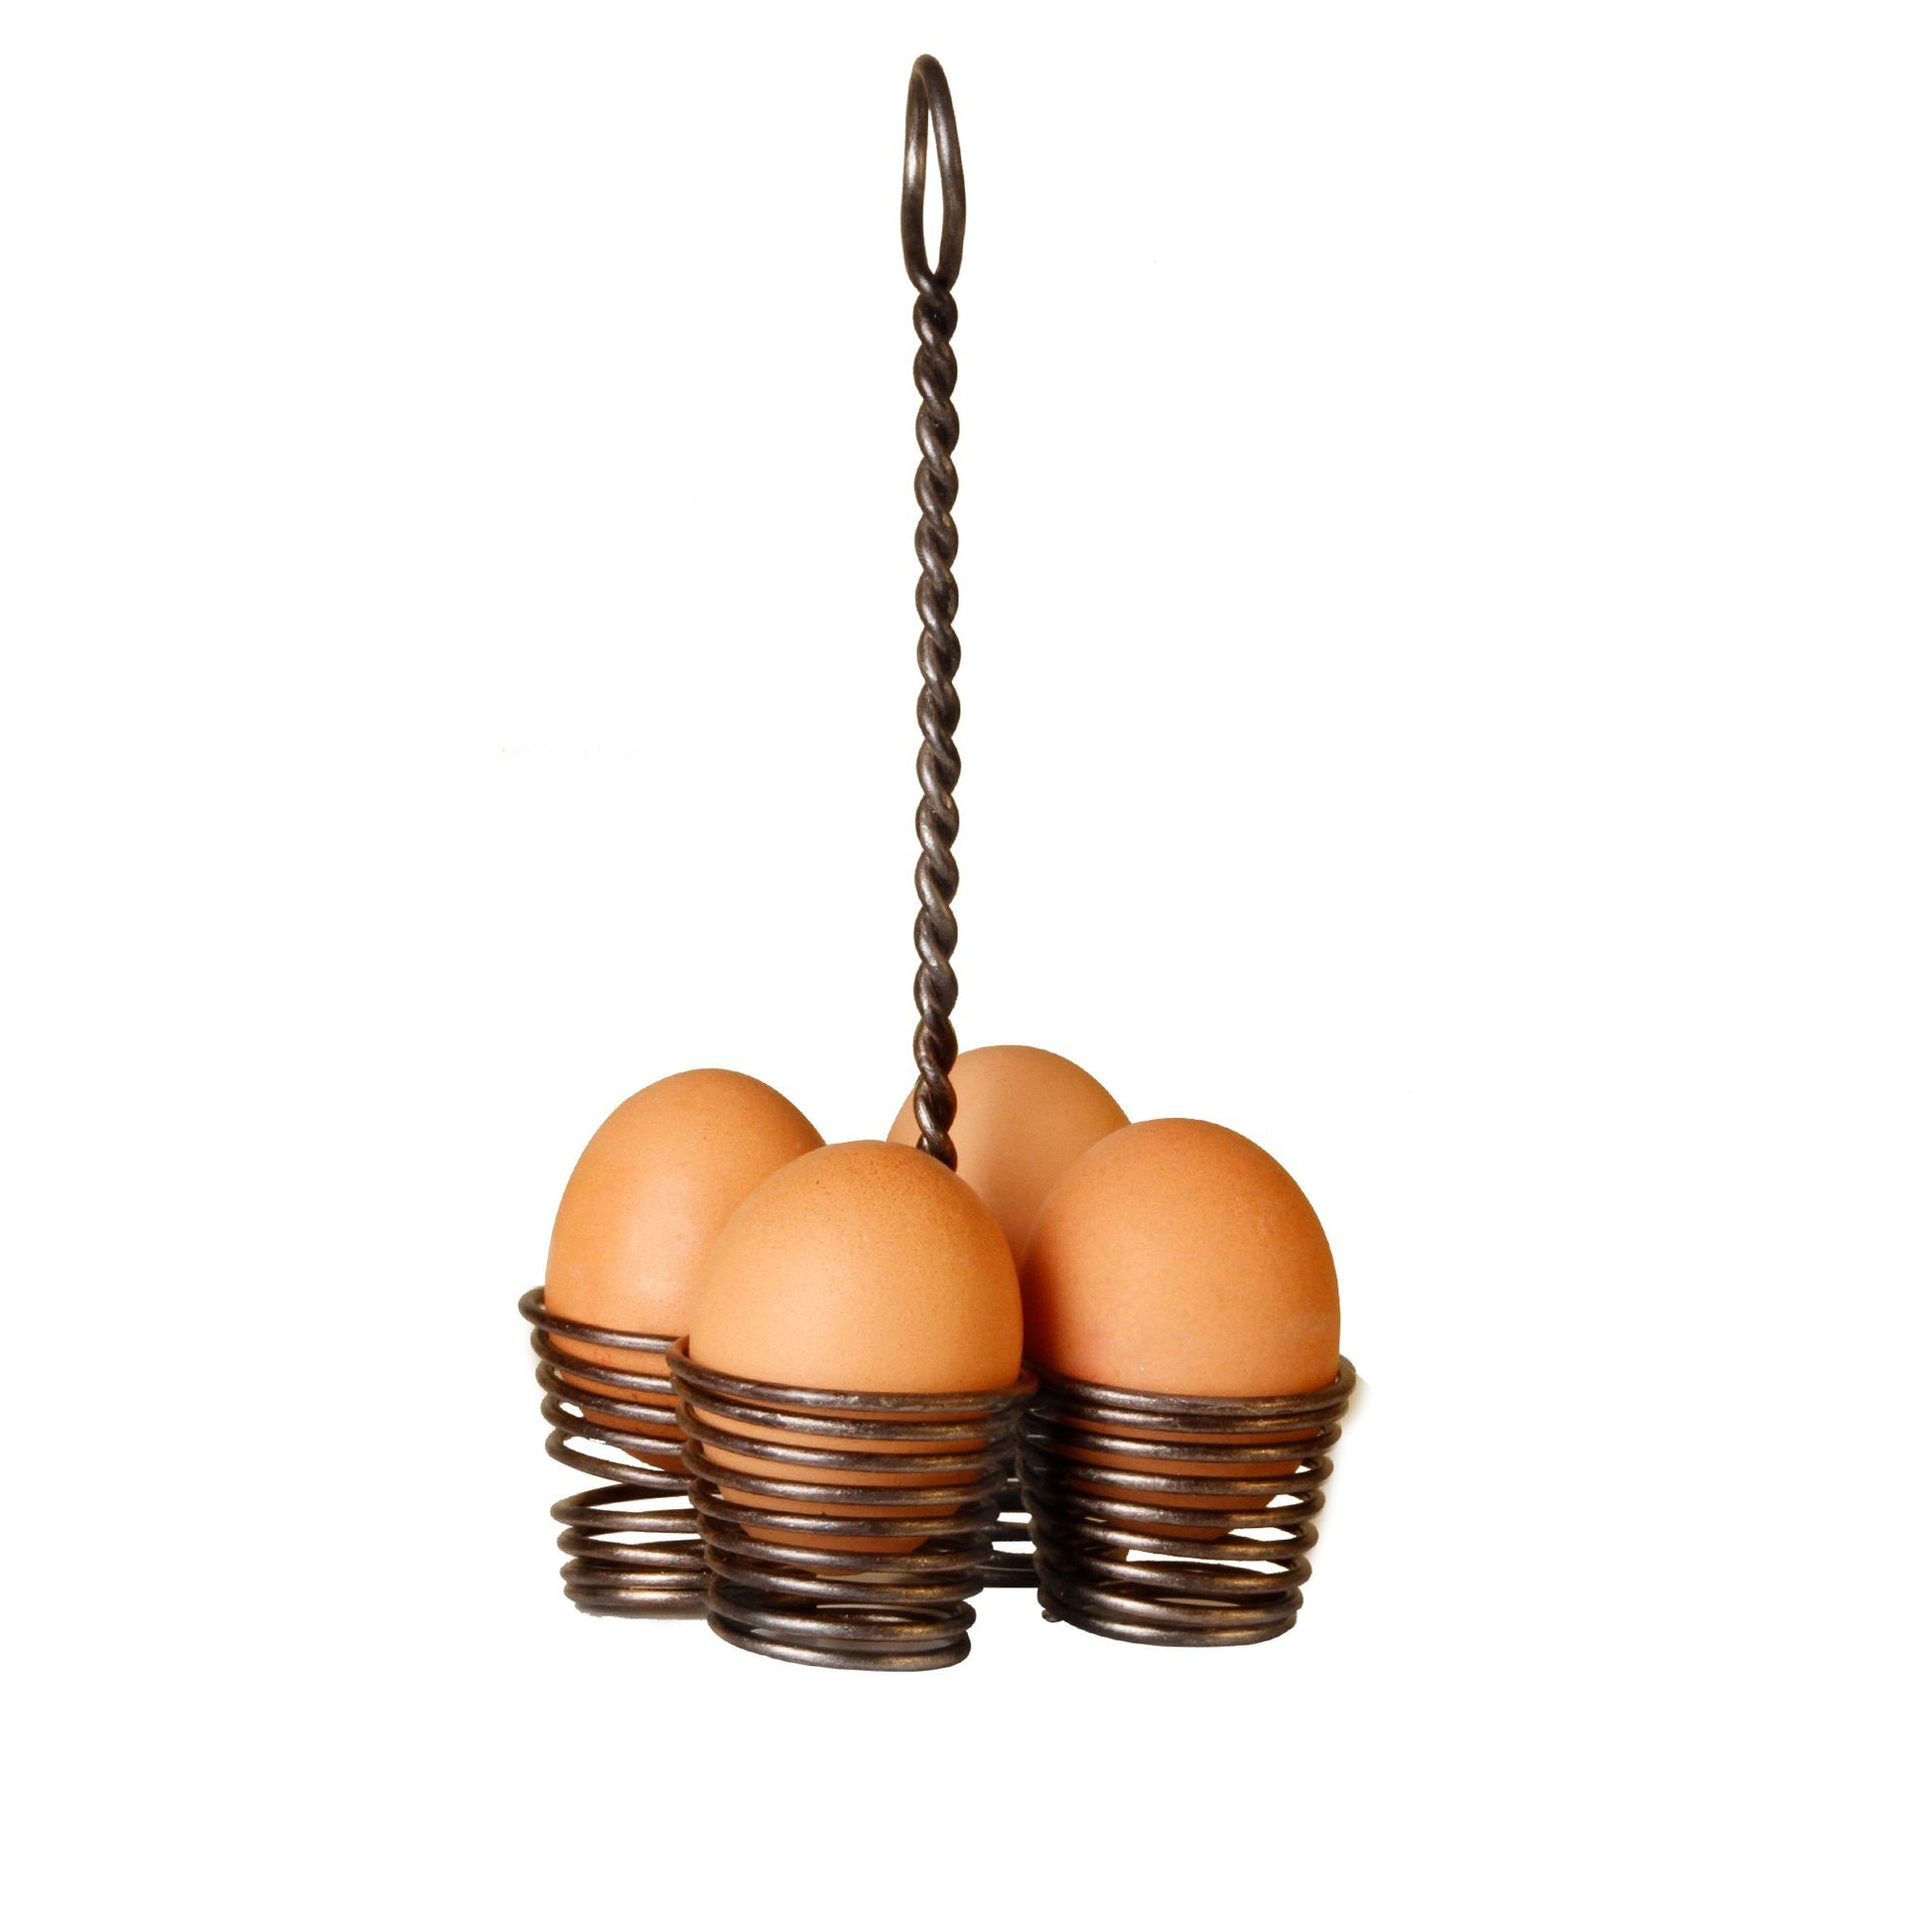 Eierständer für vier Eier aus Metall mit Griff - Vandeley